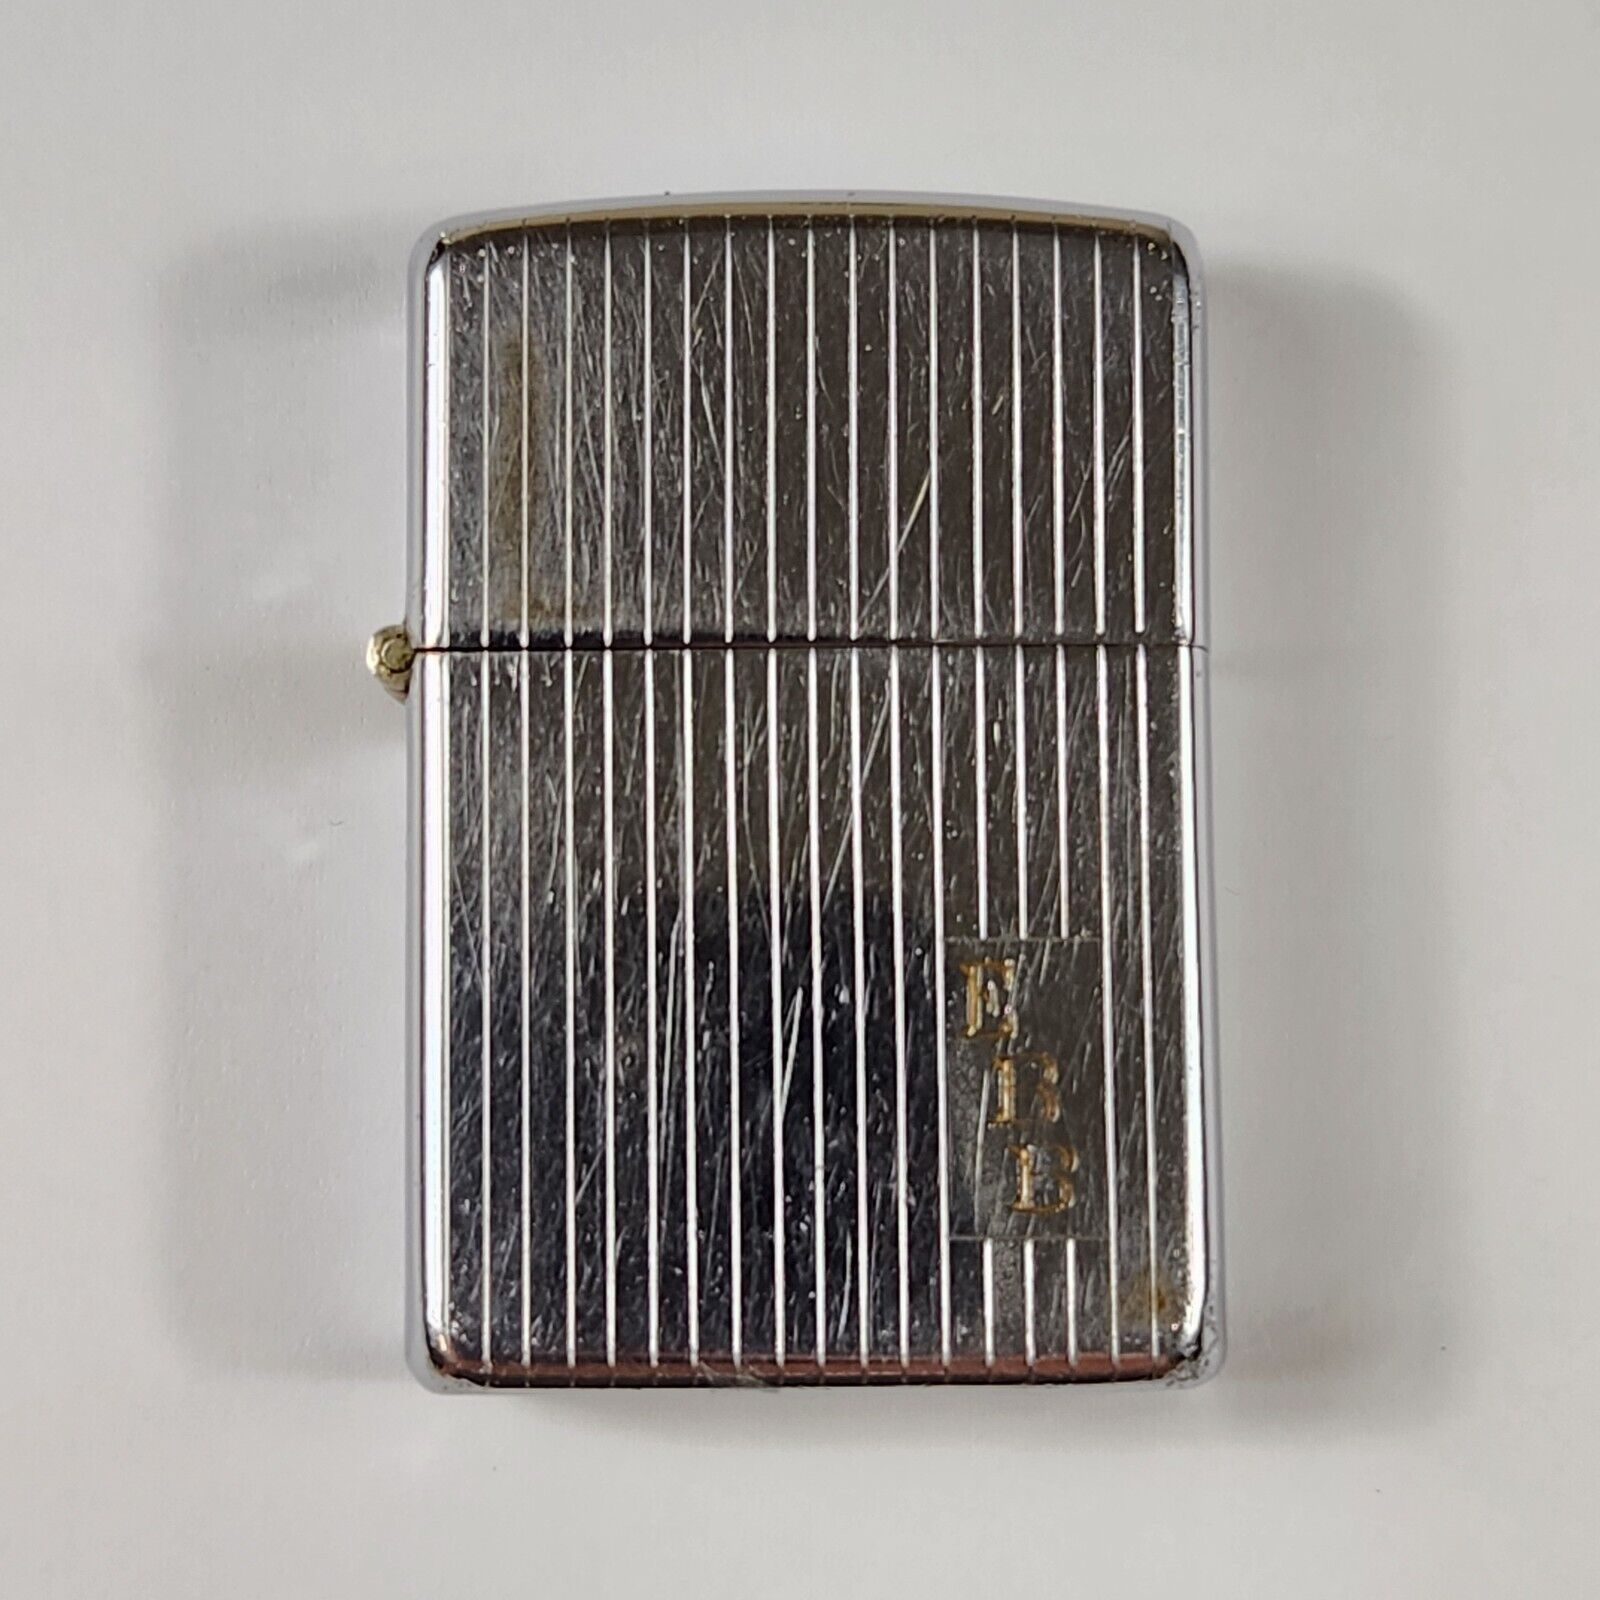 1937-1950 Zippo Lighter Engine Turned Design 2032695 Patent EBB Engraved Vintage